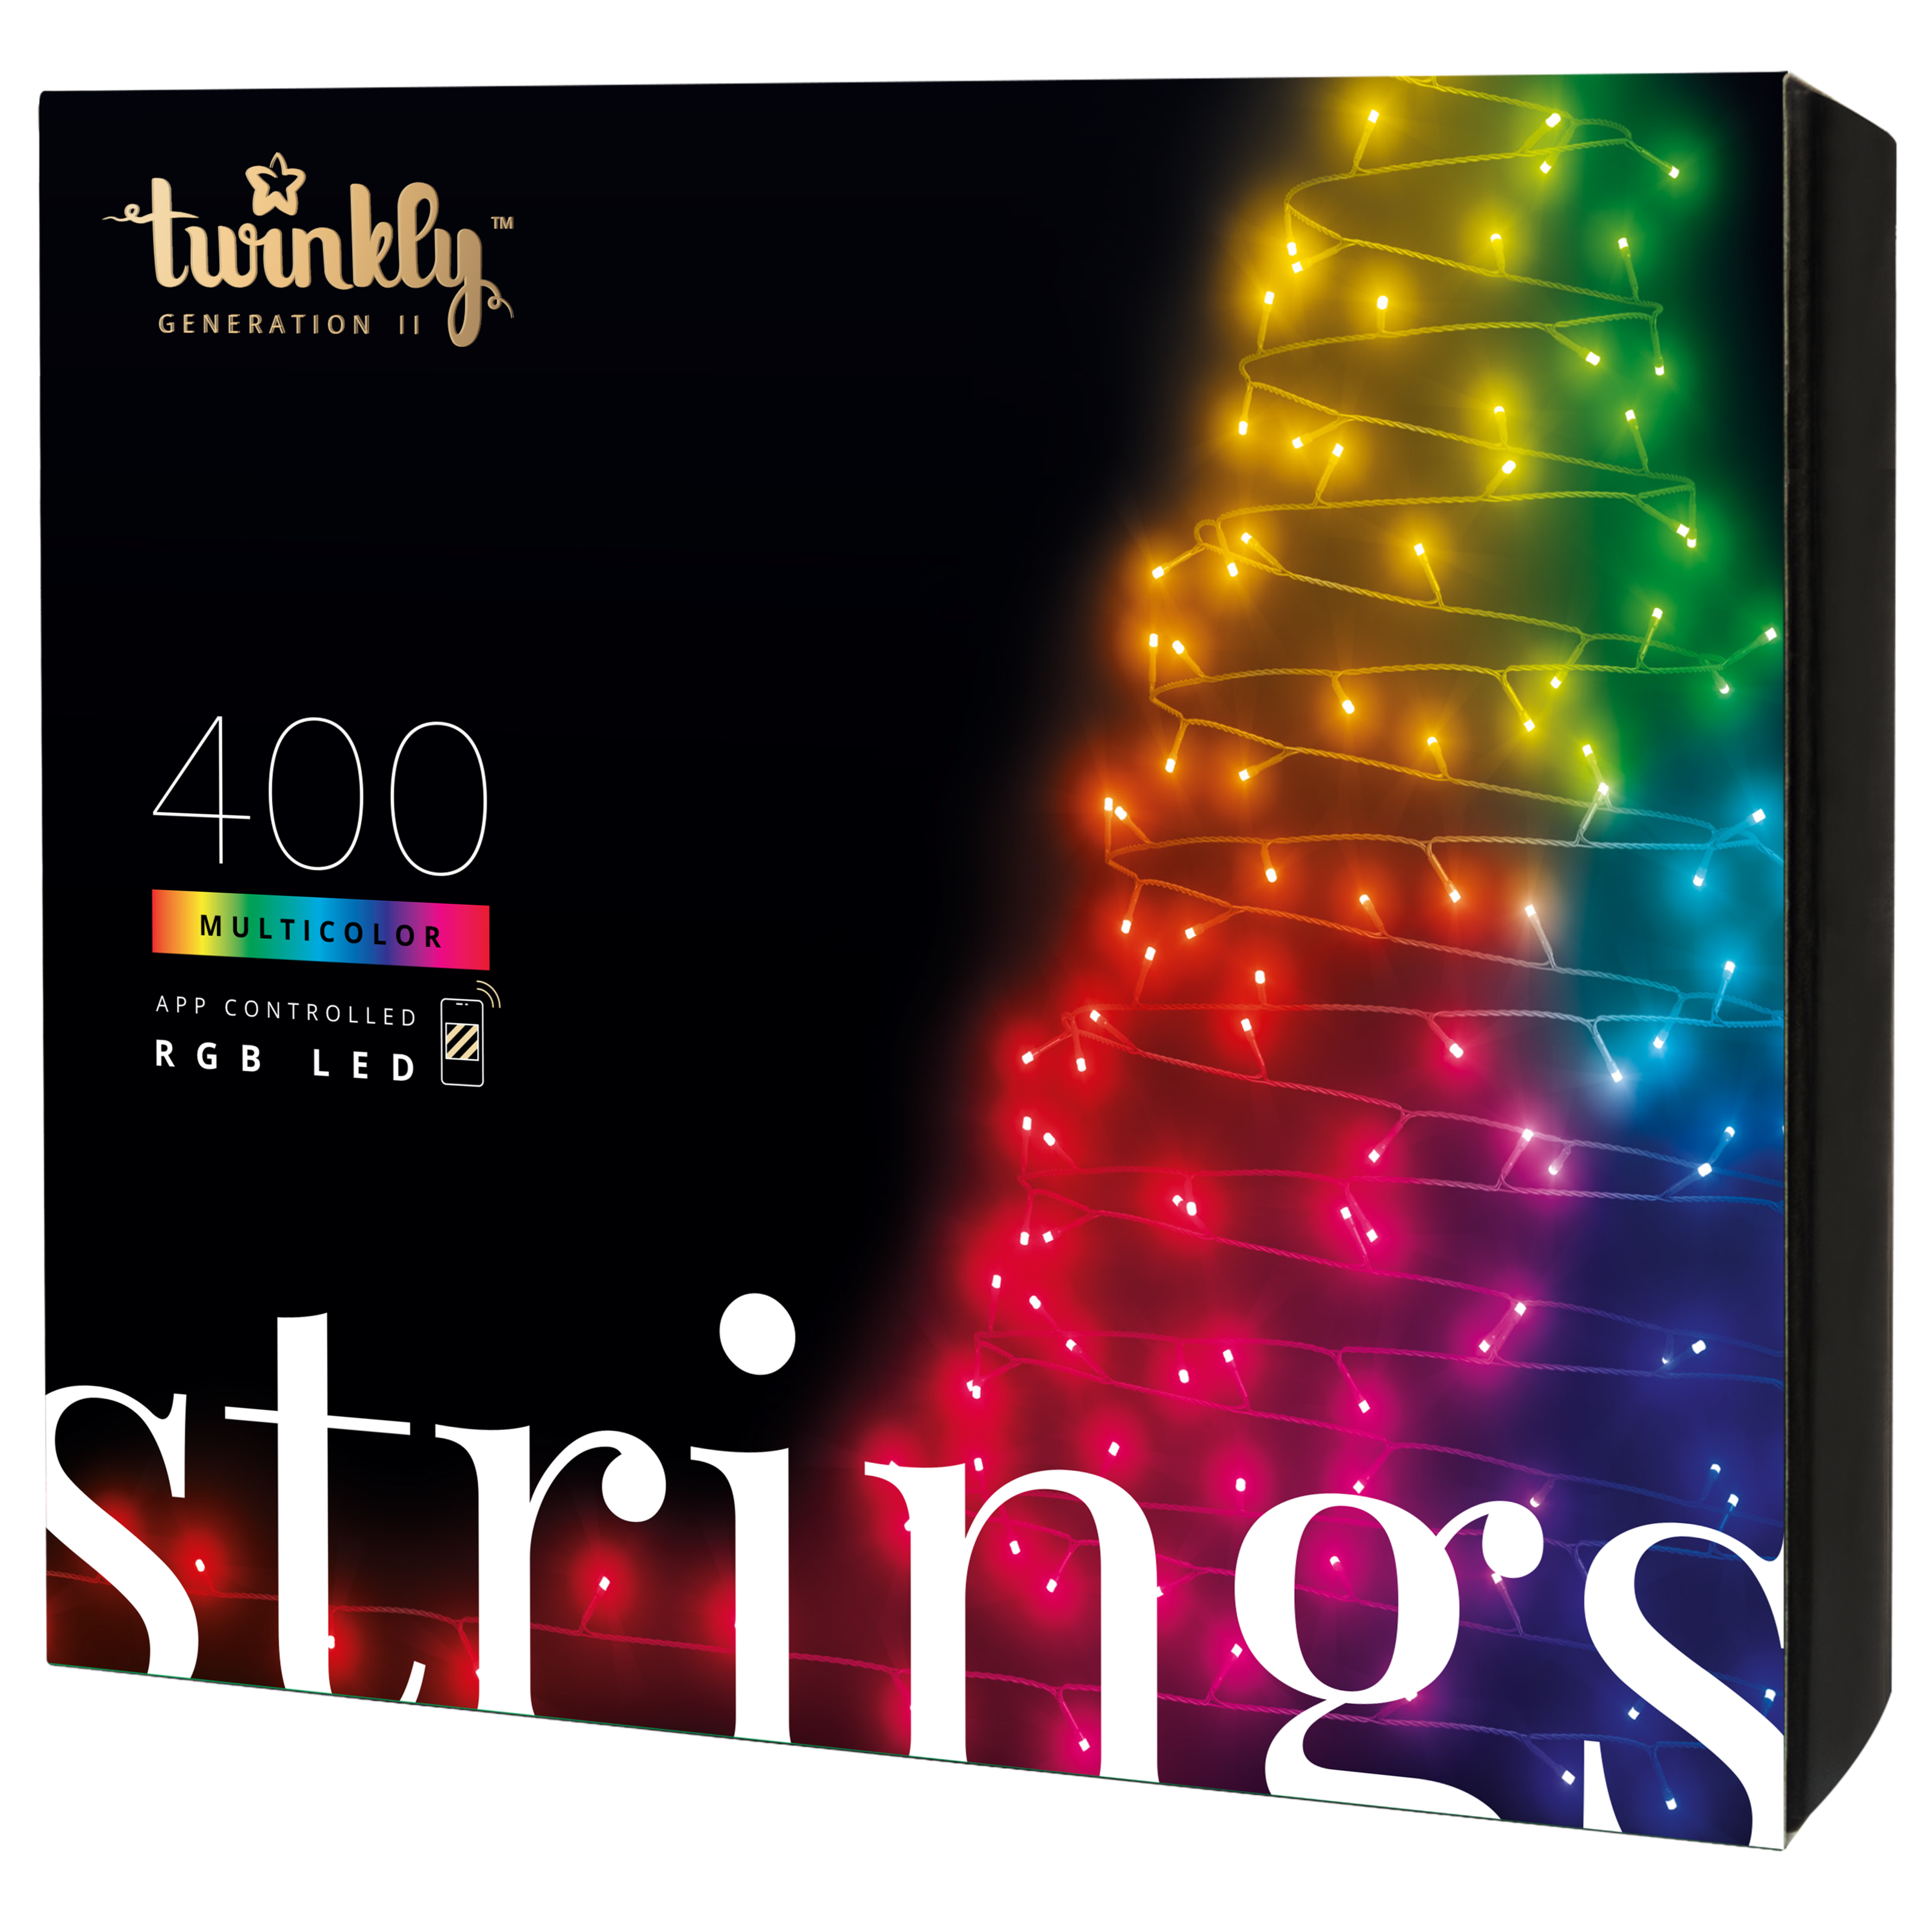 Instalatie luminoasa Strings cu 400 de LEDuri 32m